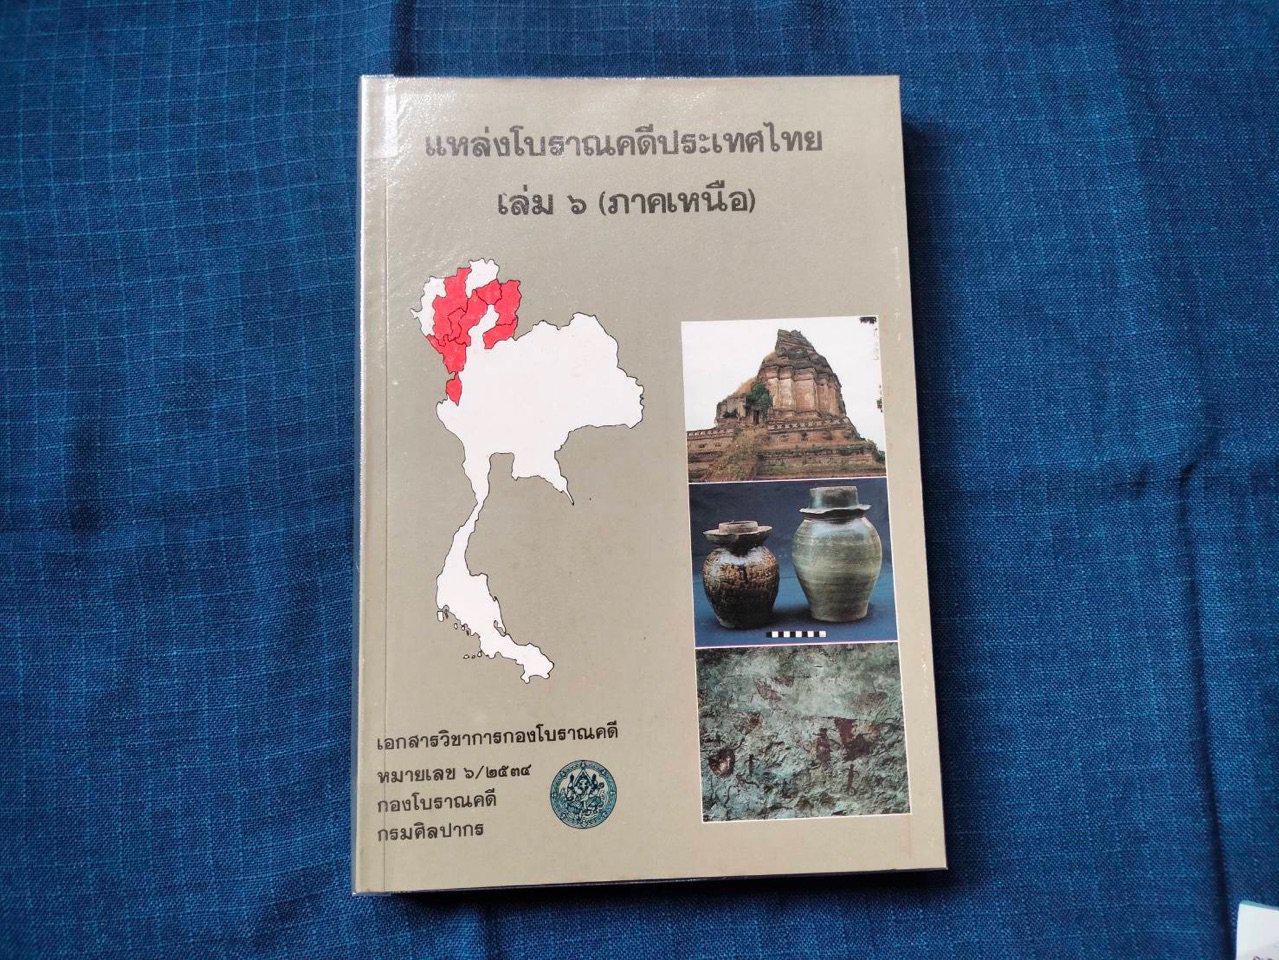 แหล่งโบราณคดีประเทศไทยเล่ม๖(ภาคเหนือ)  เอกสารวิชาการกองโบราณคดี  กรมศิลปากร ความหนา337หน้า ราคา350บาท #หนังสือเก่ามือสอง